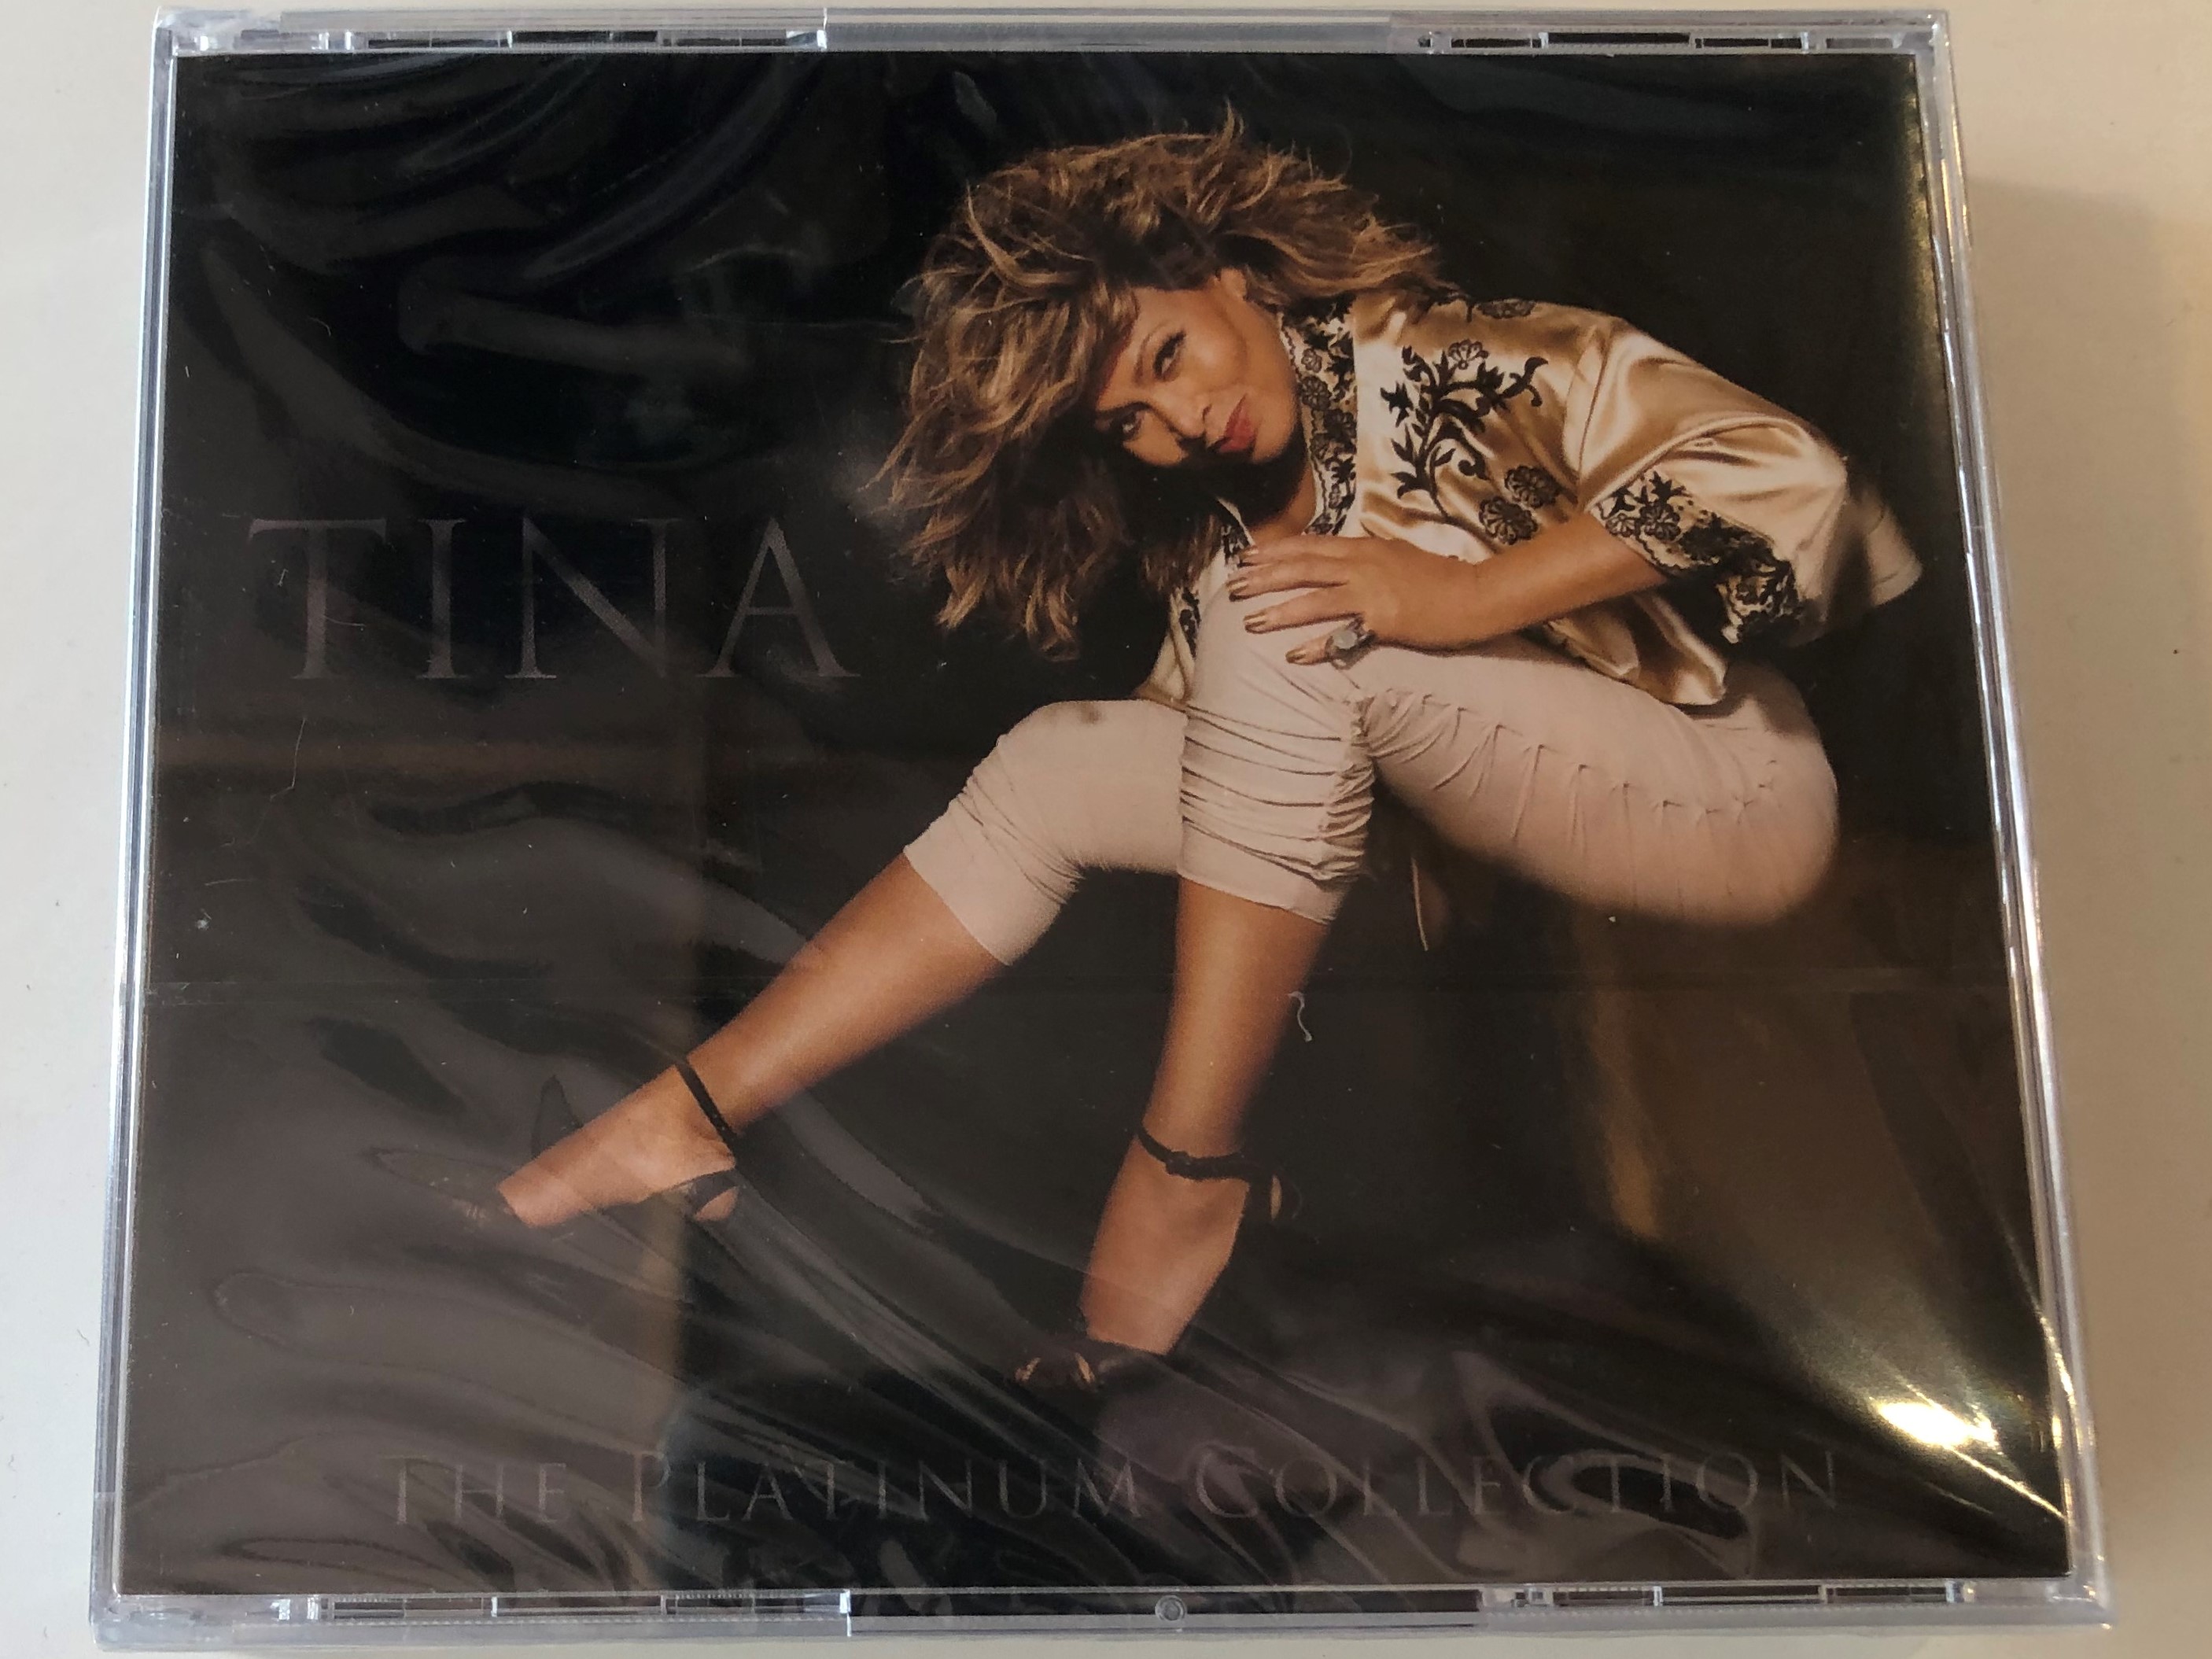 tina-the-platinum-collection-parlophone-3x-audio-cd-2009-5099926709727-1-.jpg